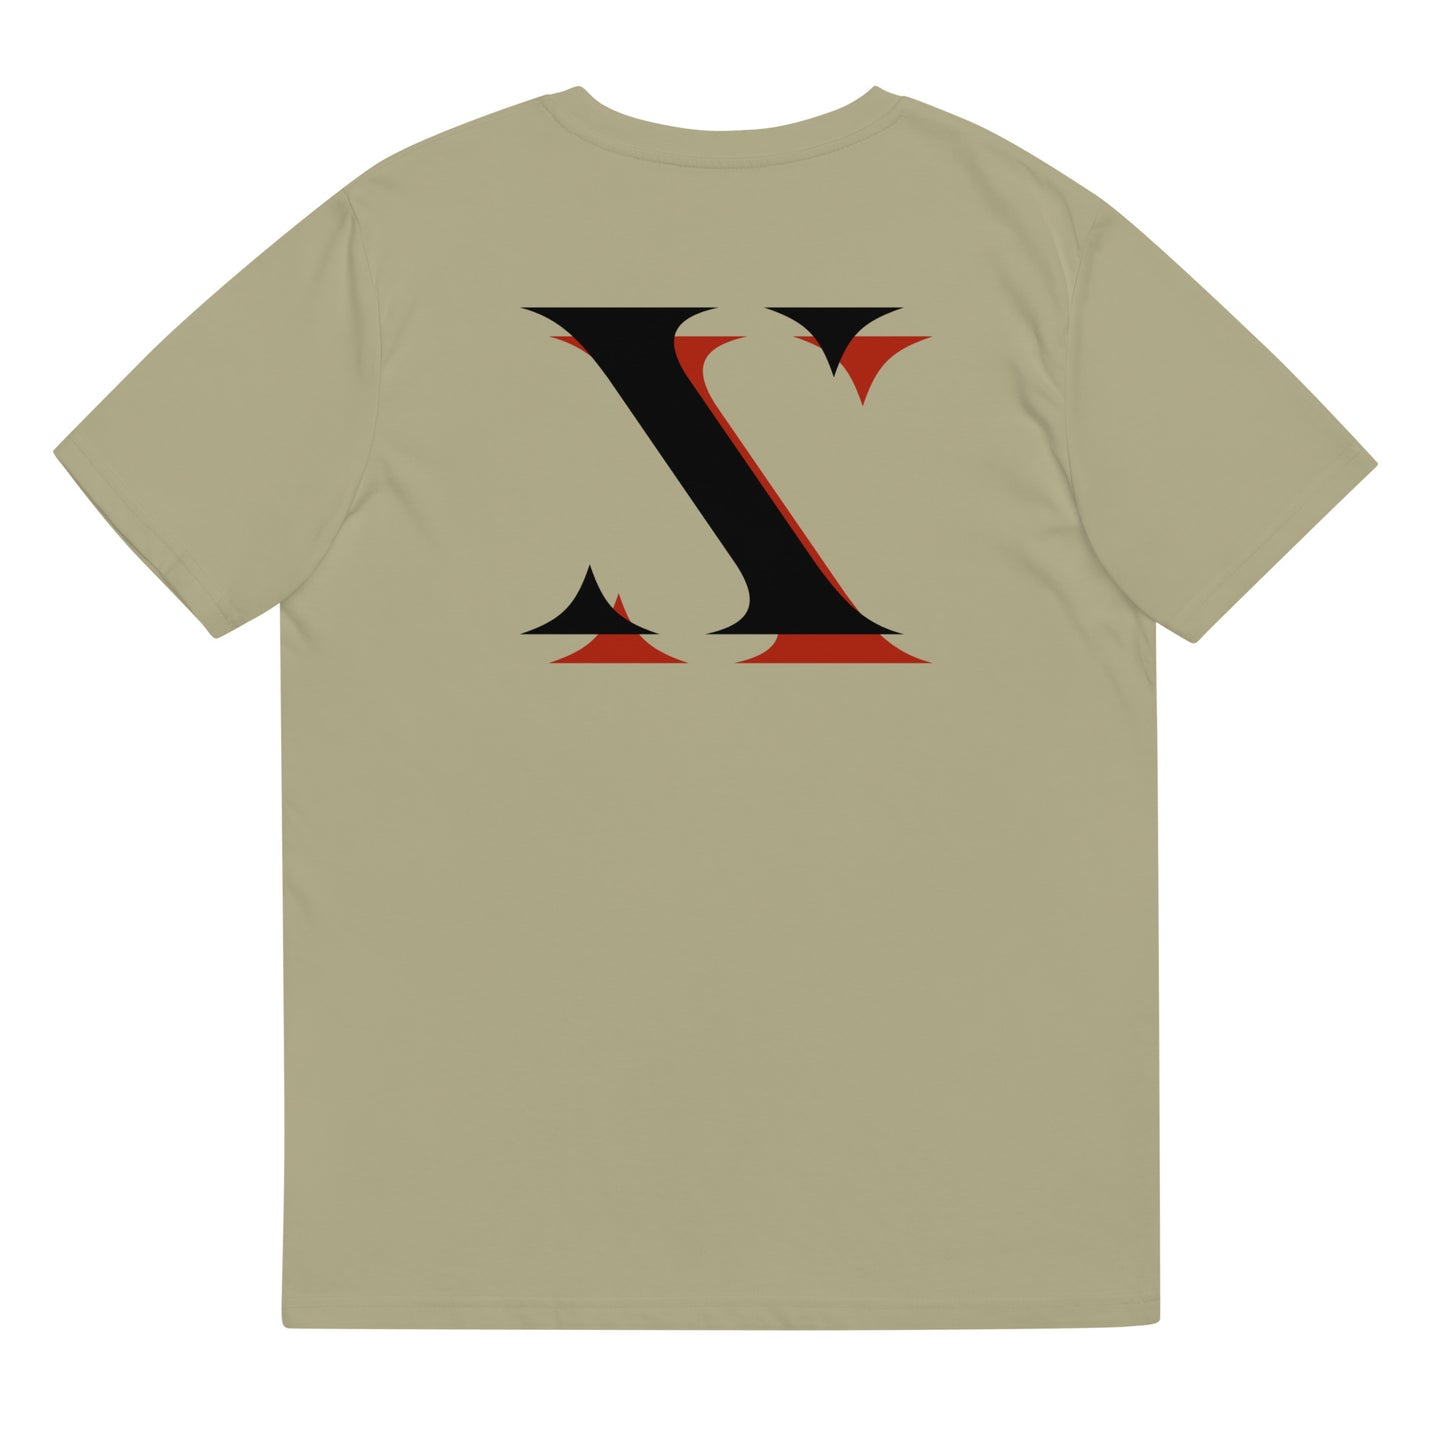 Black "X" Prxphecy Unisex T-Shirt